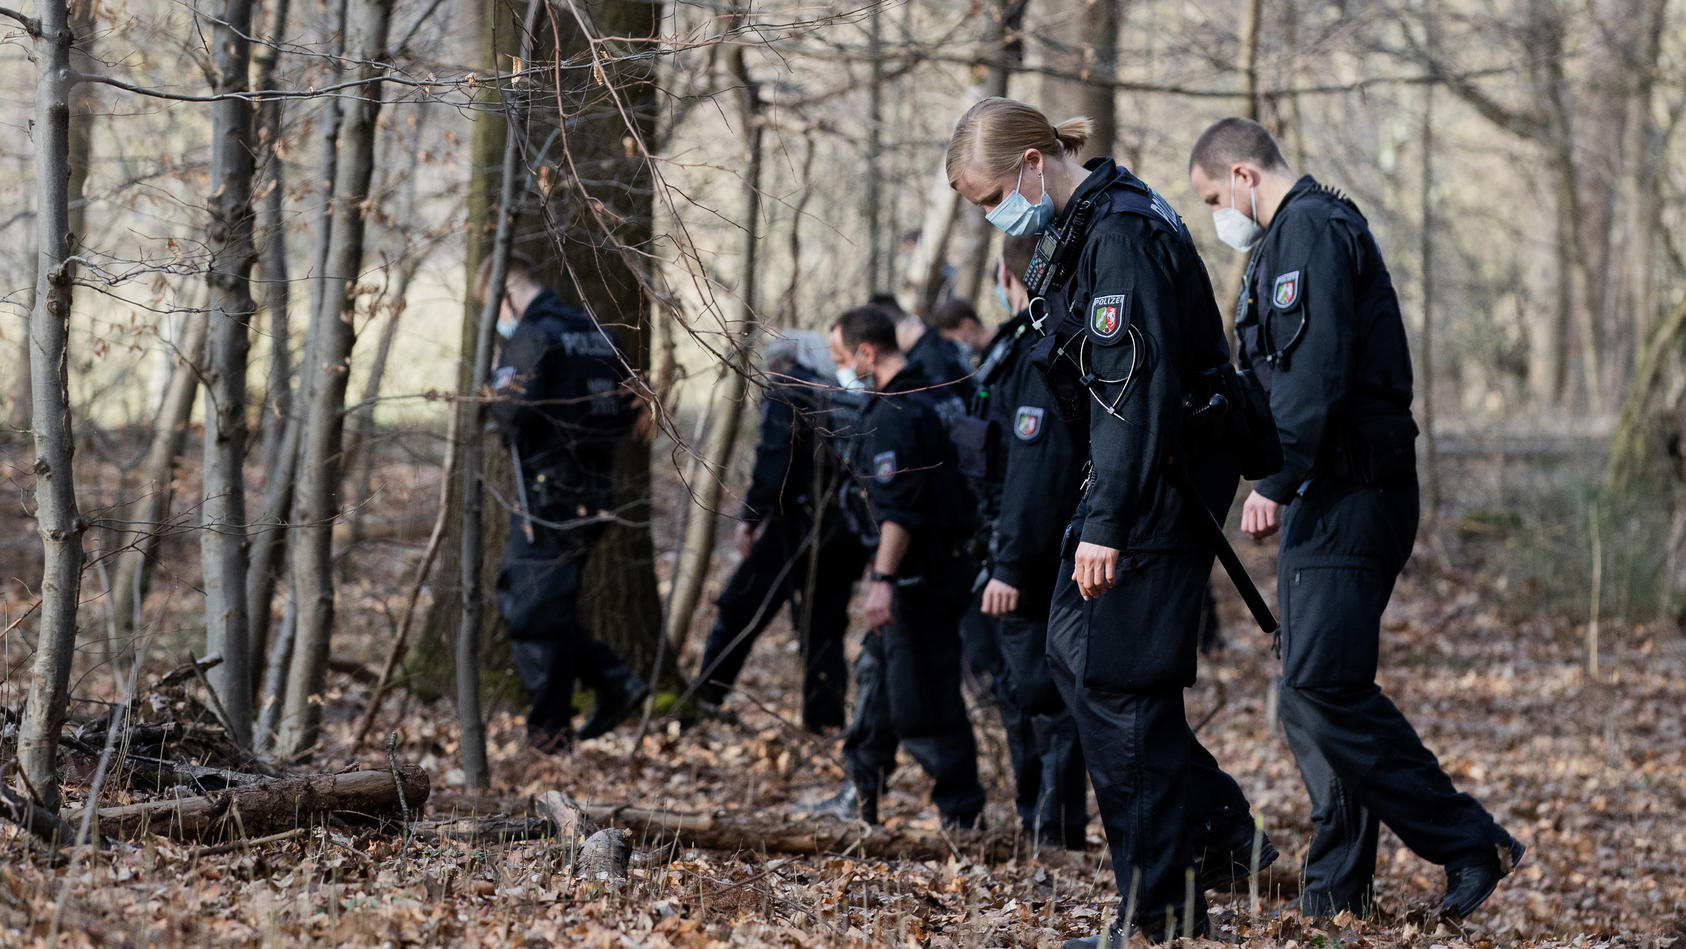 25.02.2021, Nordrhein-Westfalen, Köln: Polizeibeamte und Kriminalbeamte durchsuchen ein Waldstück im Stadtwald nach Spuren. Nach der Vergewaltigung einer Joggerin im Kölner Stadtwald befürchtet die Polizei eine Wiederholungstat. Darauf deute das atyp